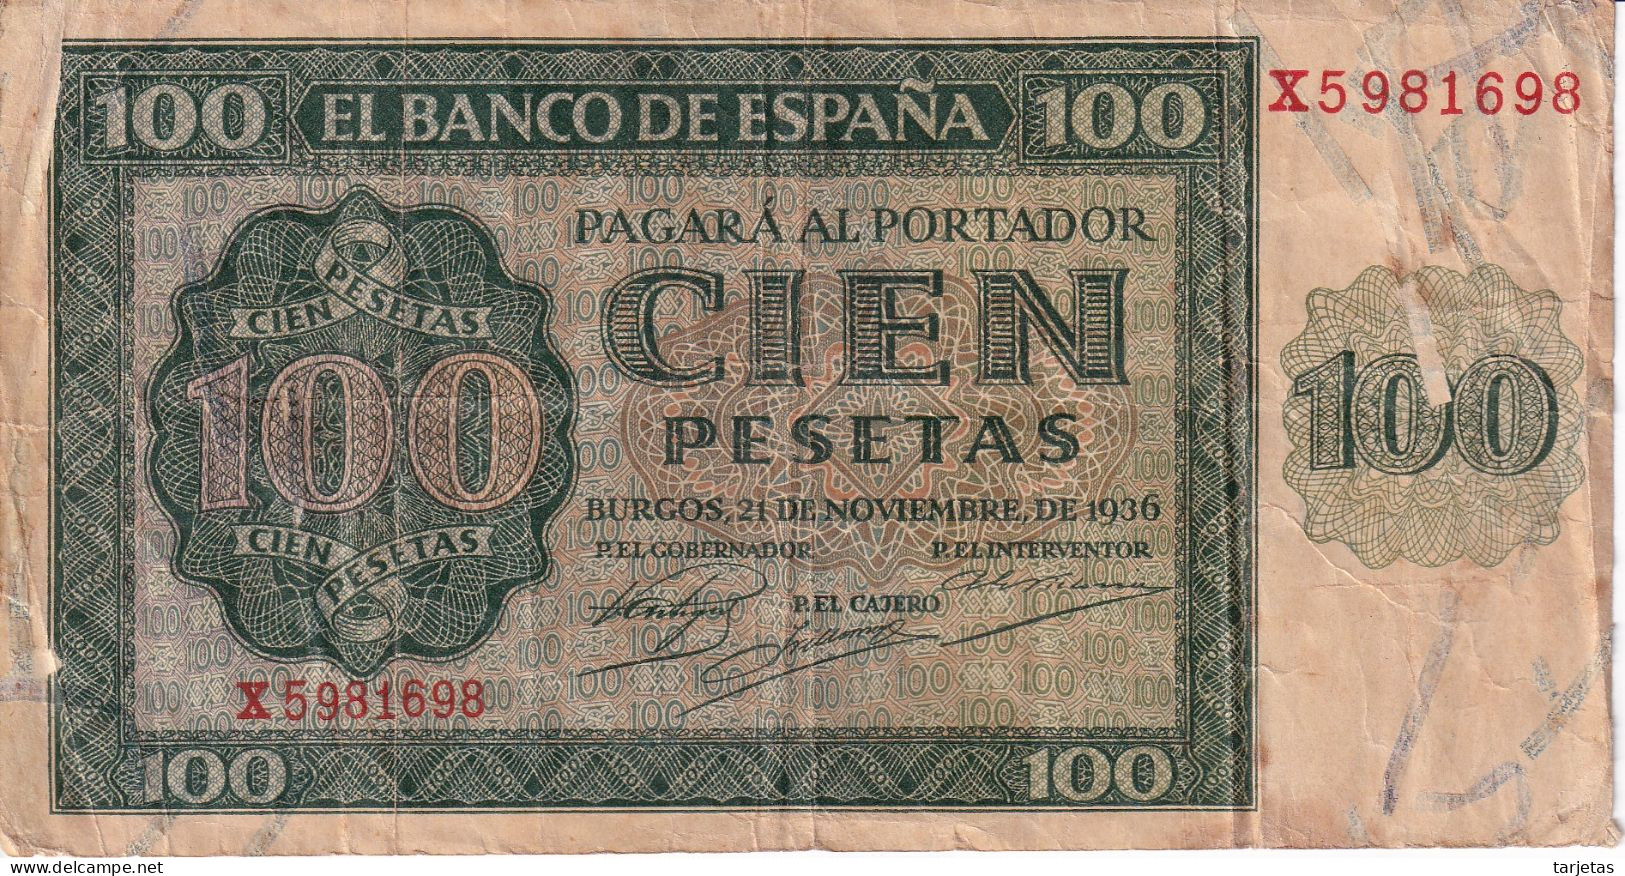 BILLETE DE ESPAÑA DE BURGOS DE 100 PTAS 20/05/1936 SERIE X (BANK NOTE) - 100 Peseten